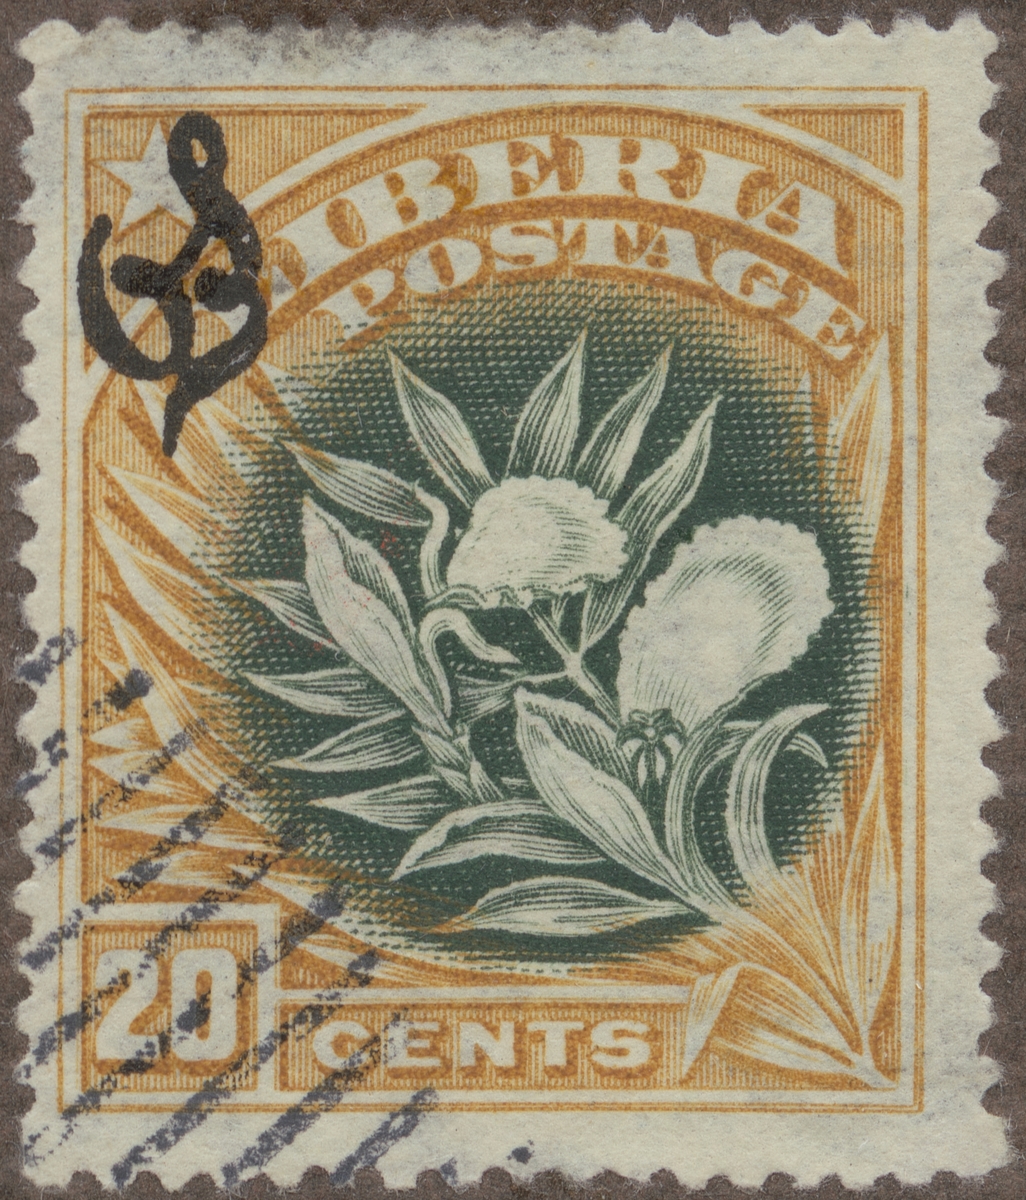 Frimärke ur Gösta Bodmans filatelistiska motivsamling, påbörjad 1950.
Frimärke från Liberia, 1909. Motiv av blommande pepparbuske.